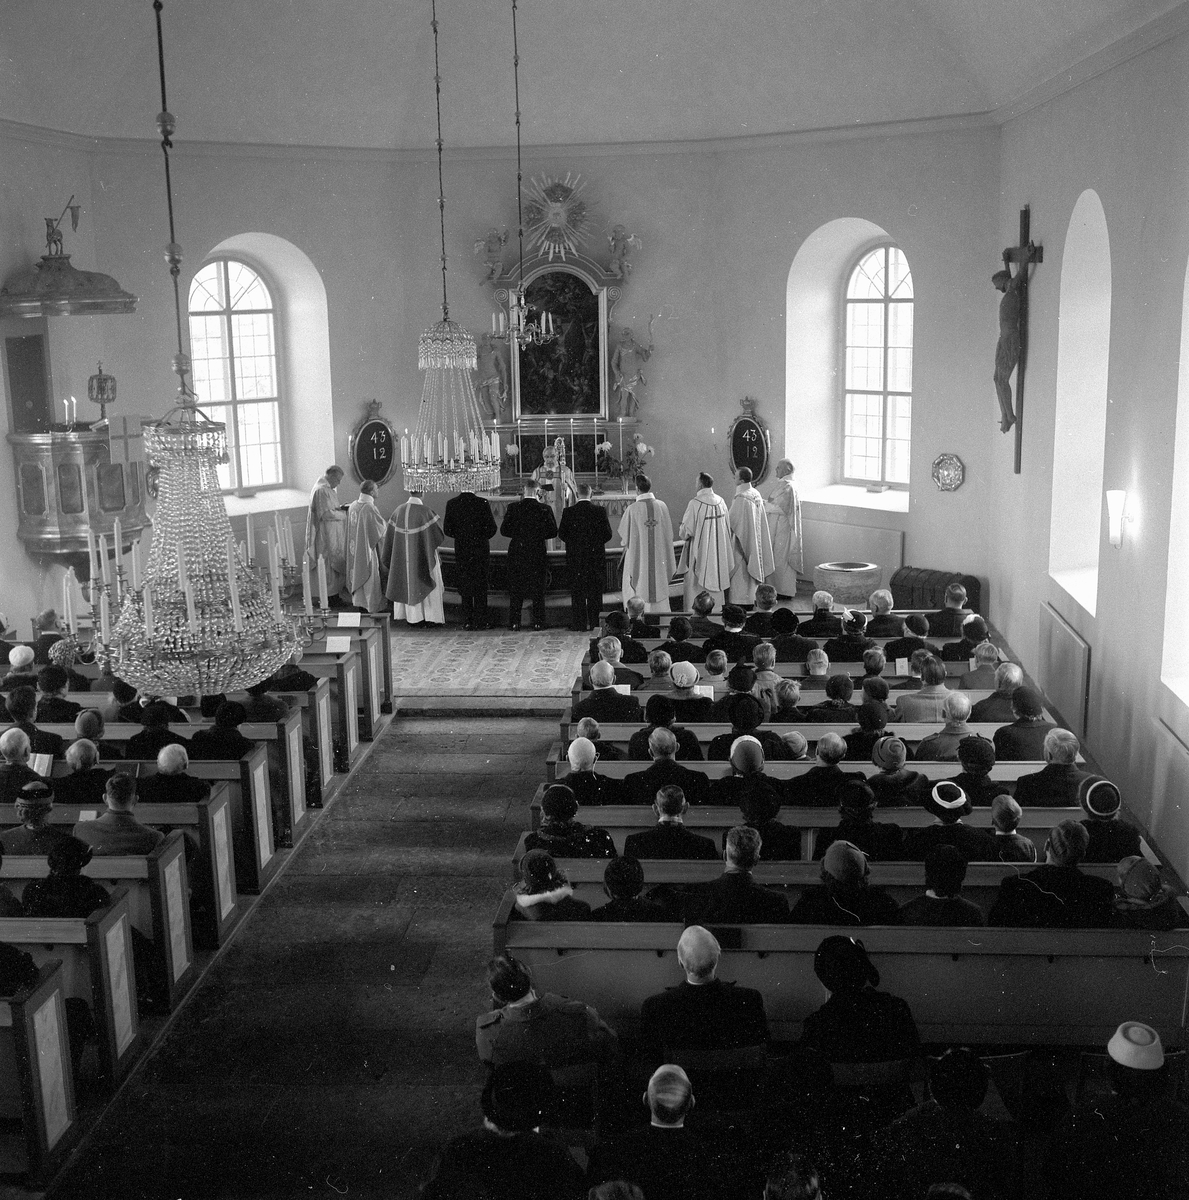 Vintrosa kyrka återinvigs.
December 1956.